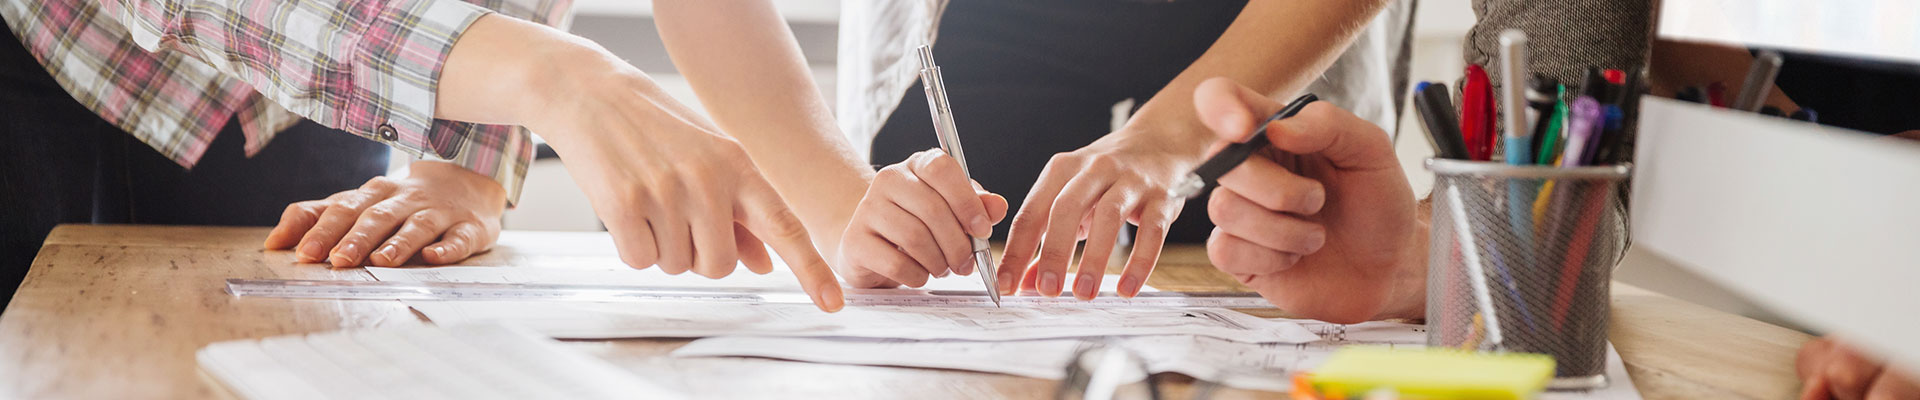 Die Hände von drei Personen zeigen auf oder schreiben auf ein Papier auf einem Tisch.